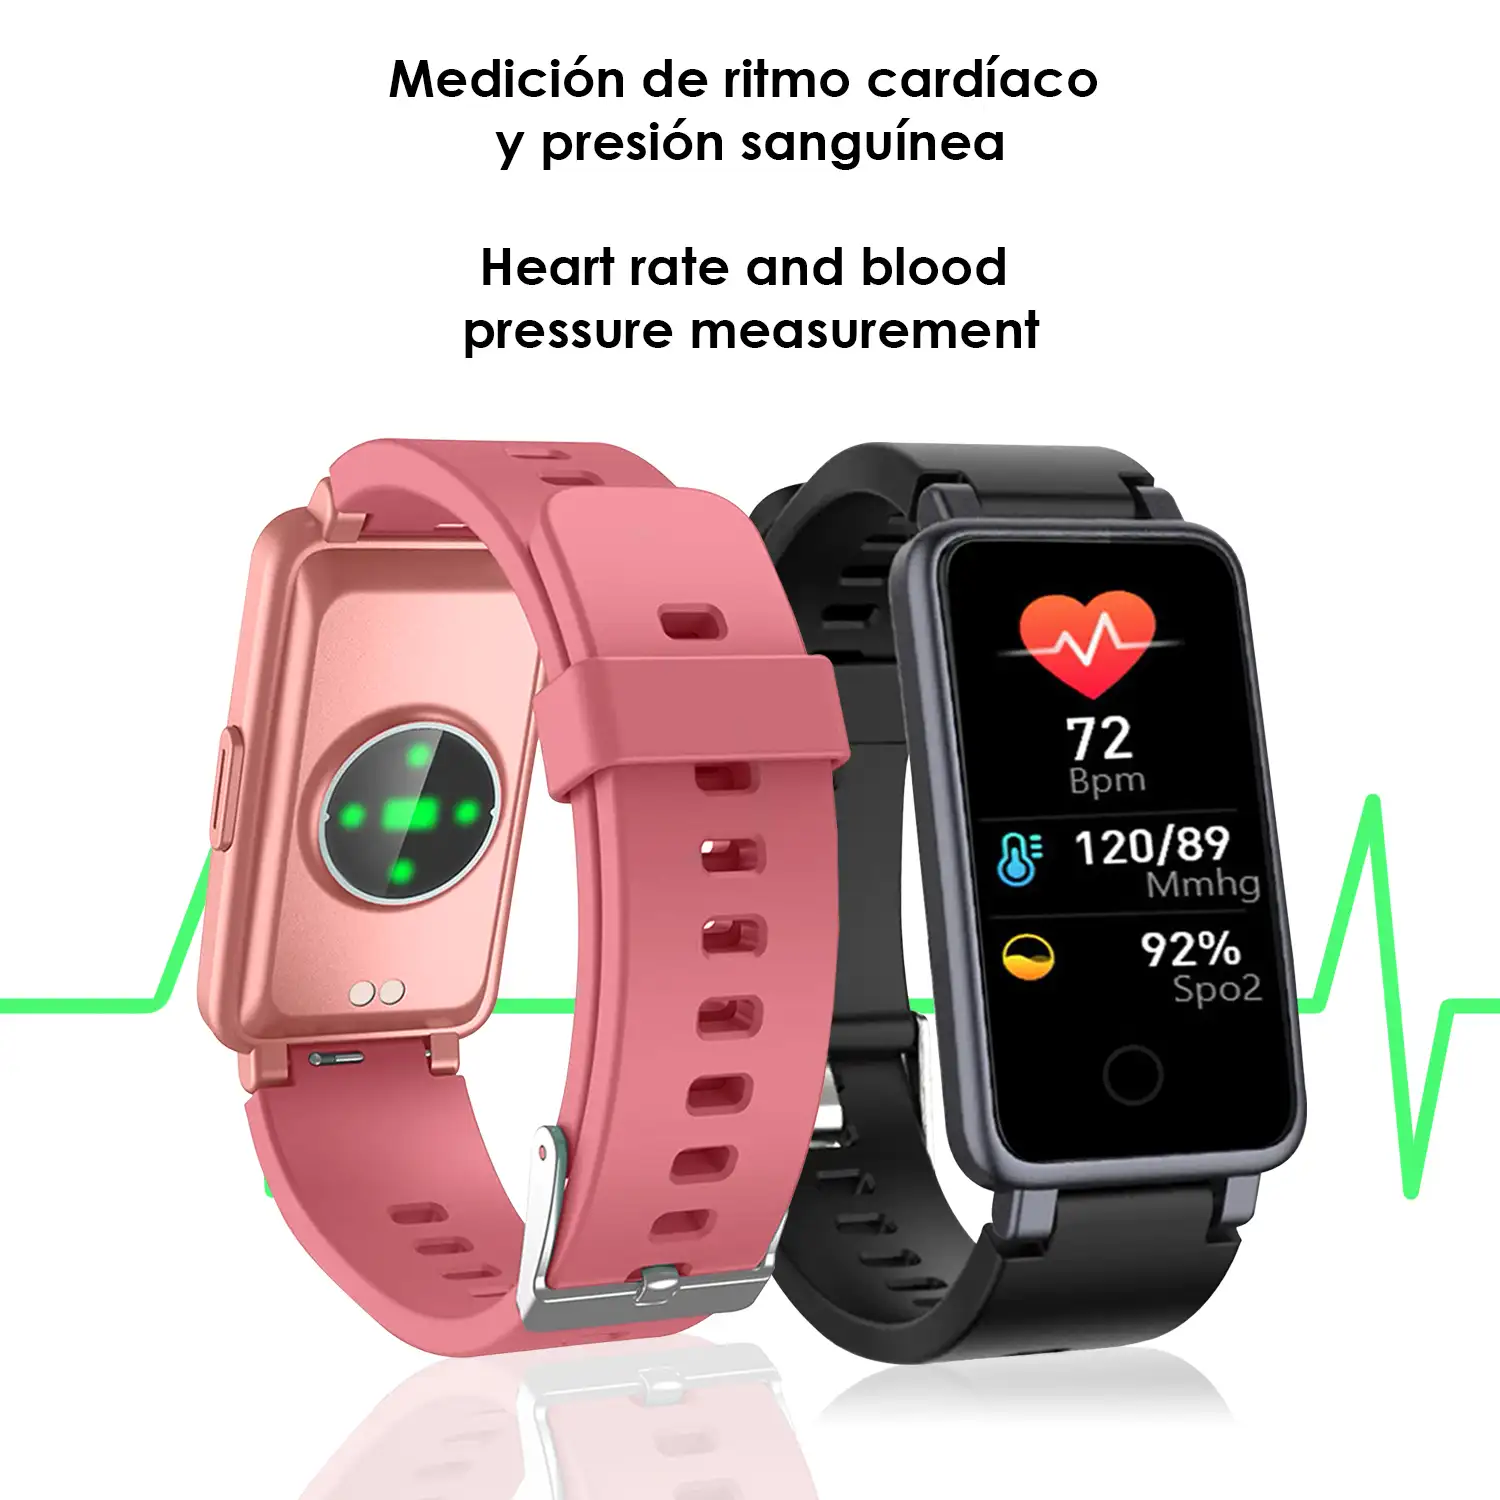 Brazalete inteligente C2 Plus con monitor cardiaco, presión sanguínea y notificaciones.